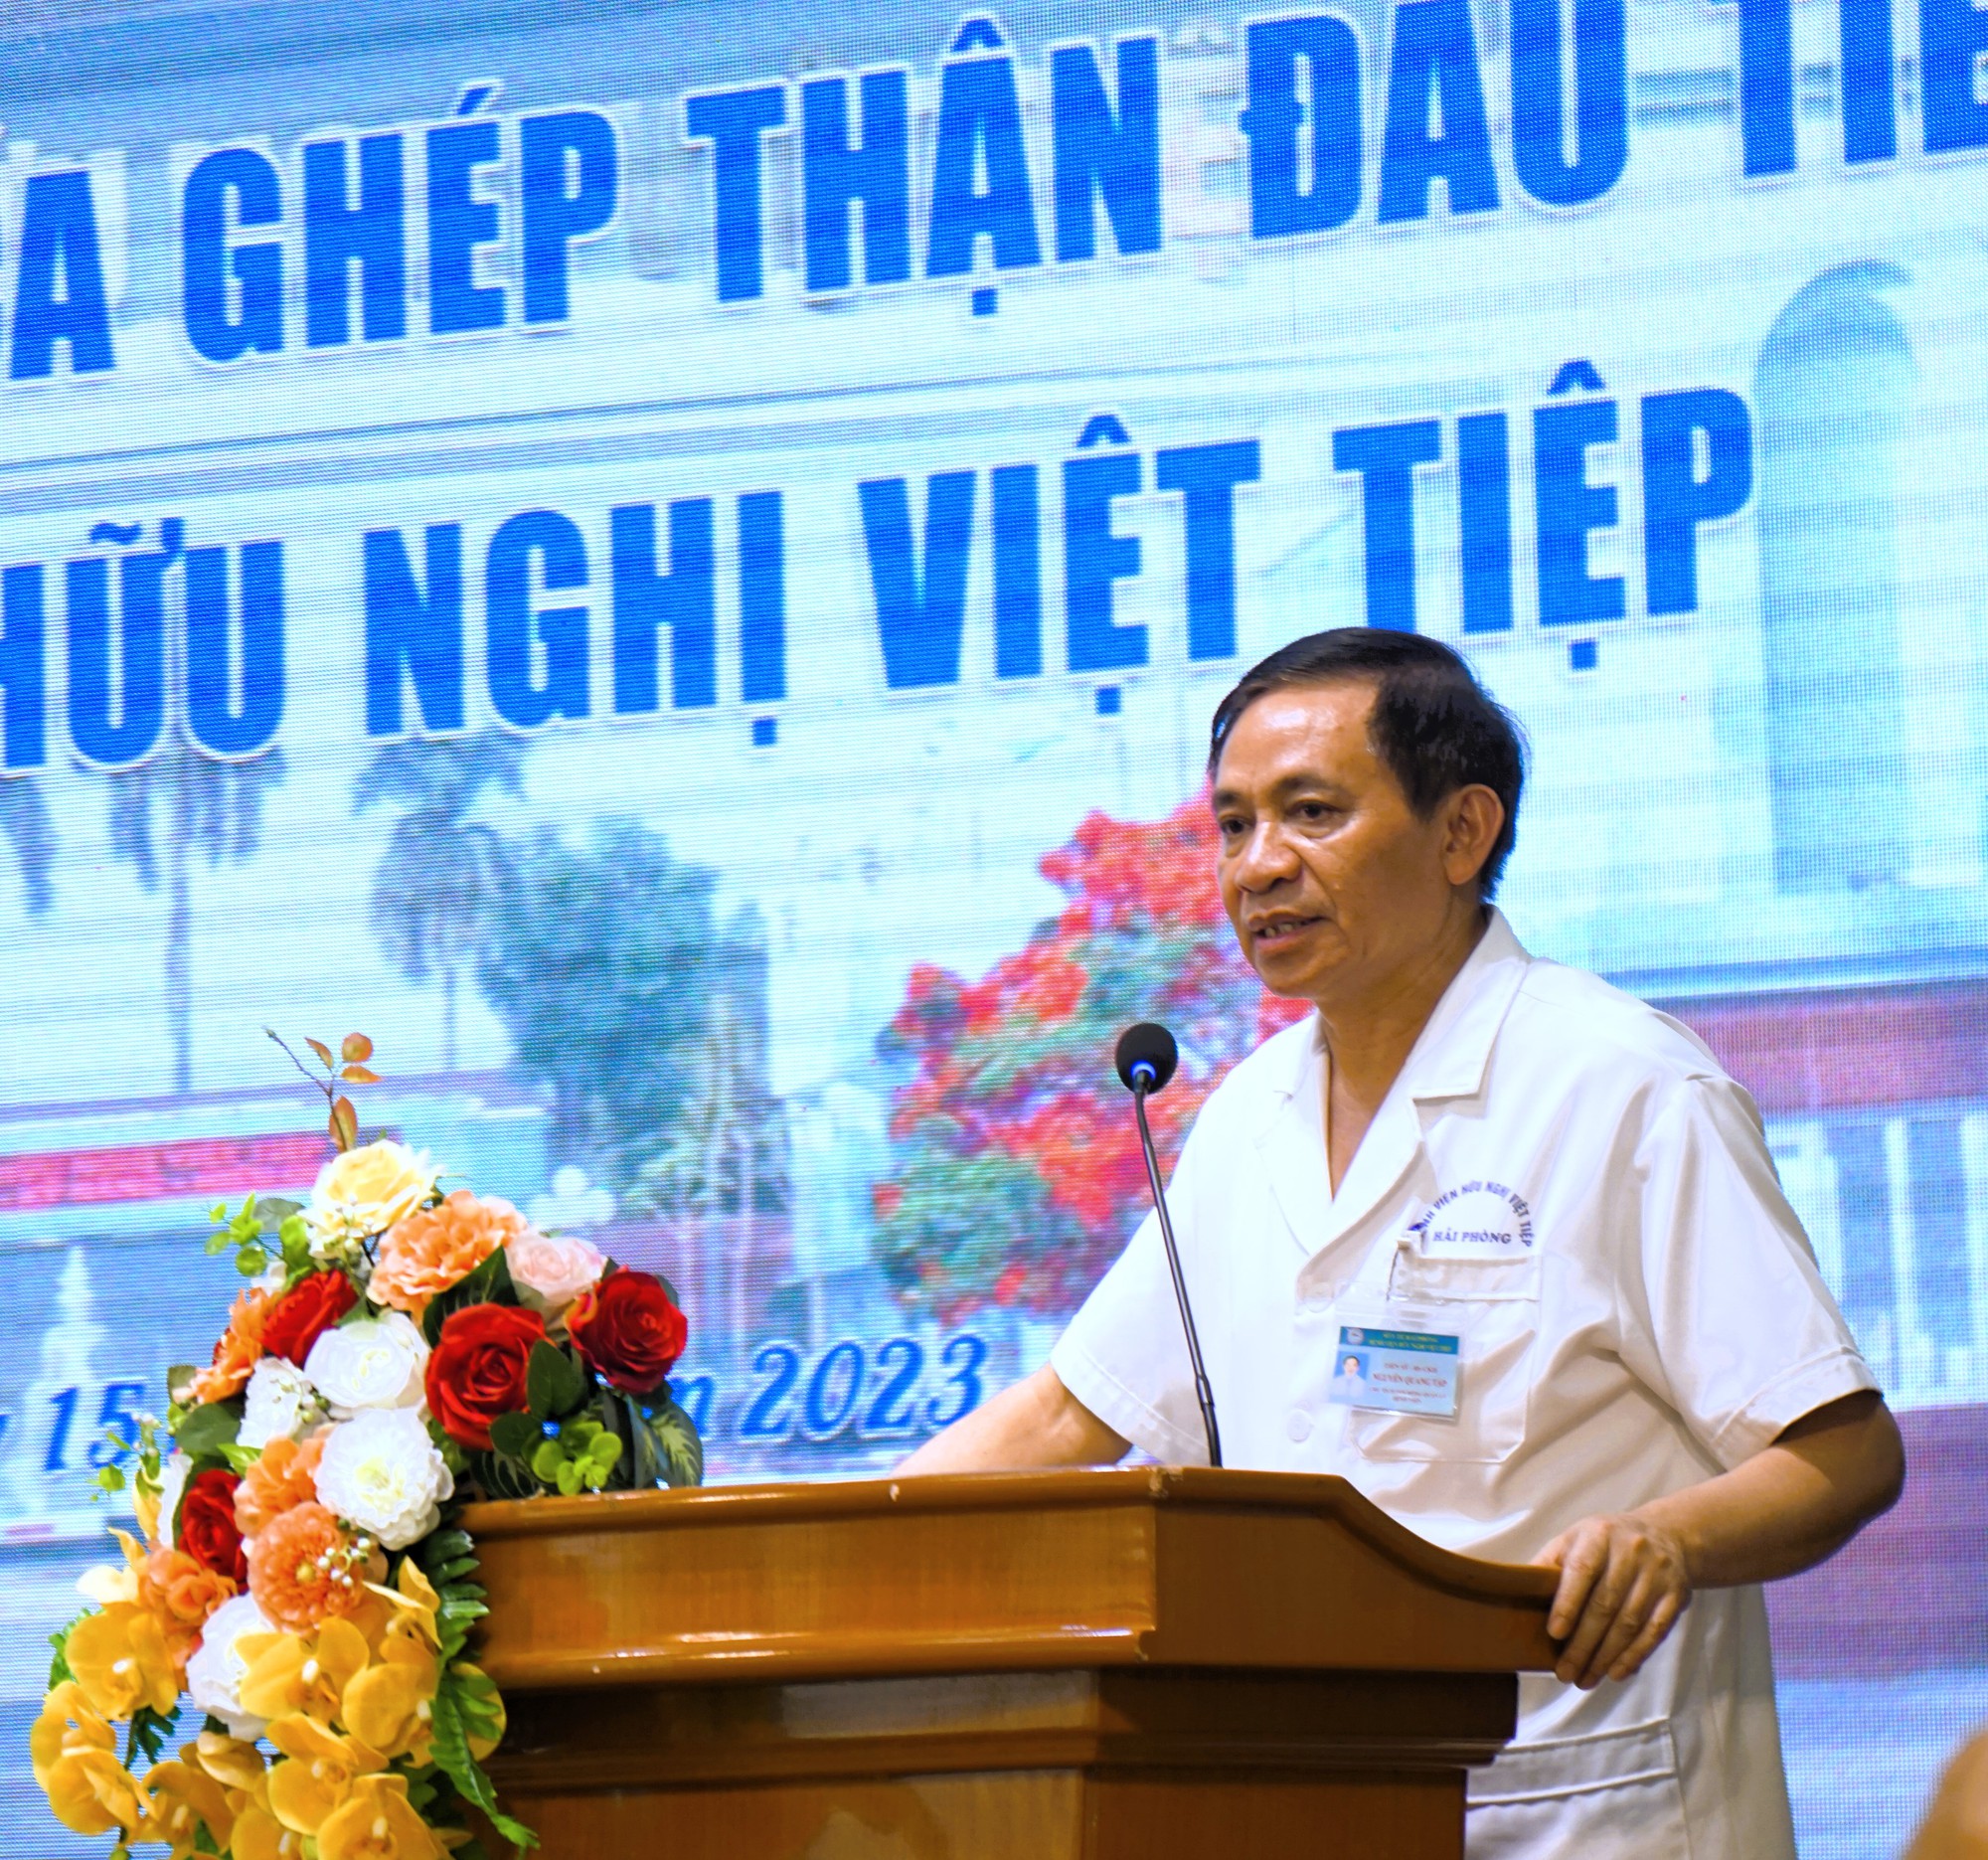 Bệnh viện Hữu nghị Việt Tiệp, Hải Phòng thực hiện thành công ca ghép thận đầu tiên  - Ảnh 2.